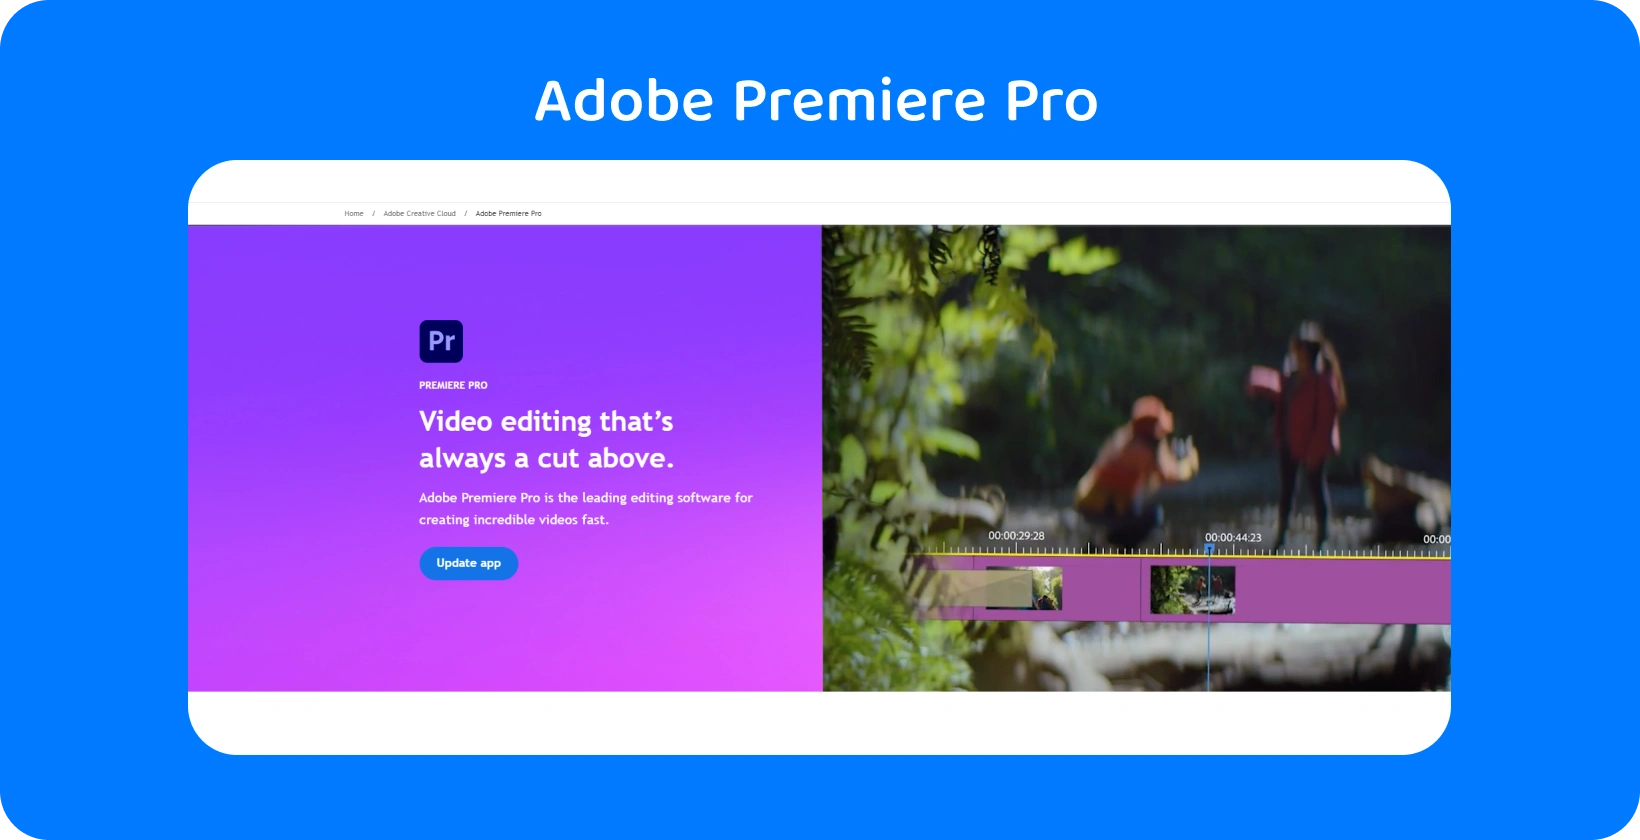 Adobe Premiere Pro felület, amely fejlett videószerkesztő képességeit jeleníti meg, ideális a gyors és pontos szerkesztésekhez.